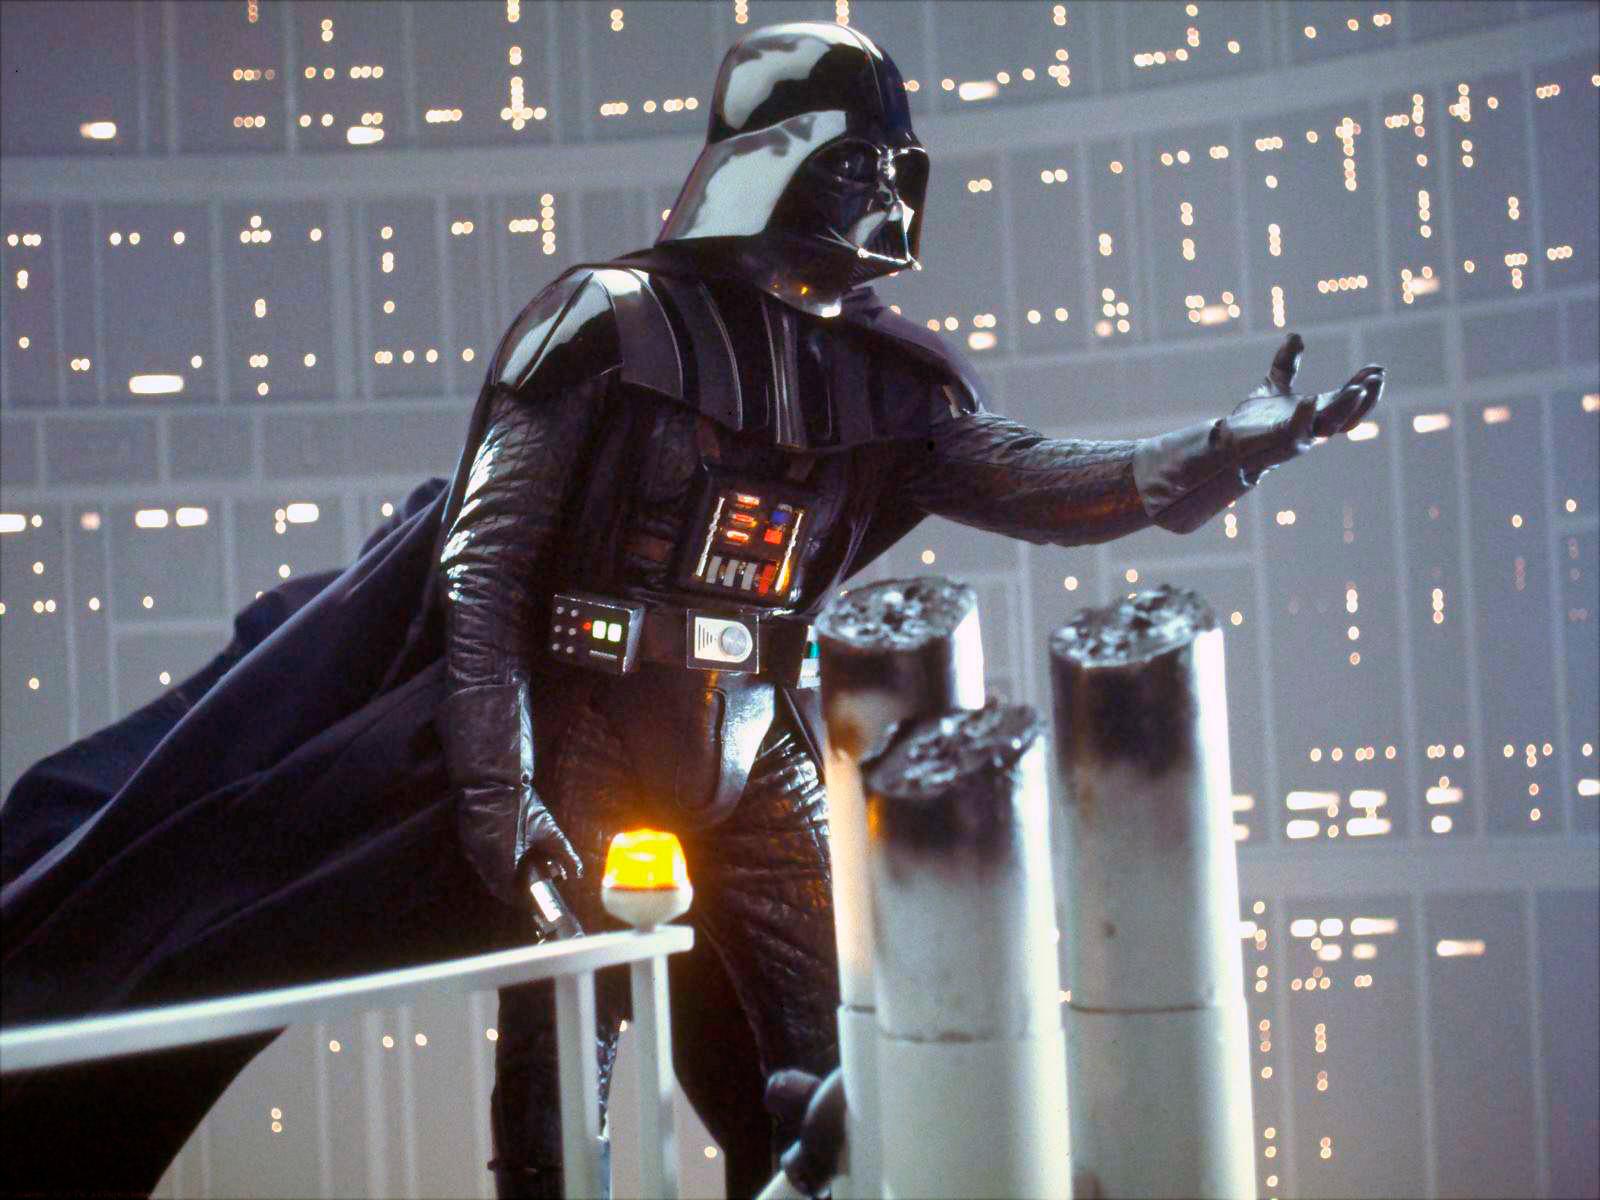 ”I AM YOUR FATHER” David Prowse som Darth Vader i den ikoniska scenen ur ”Episod V: Empire strikes back”, där den före detta jediriddaren berättar för Luke Skywalker att han inte dödade utan i själva verket ÄR hans pappa.